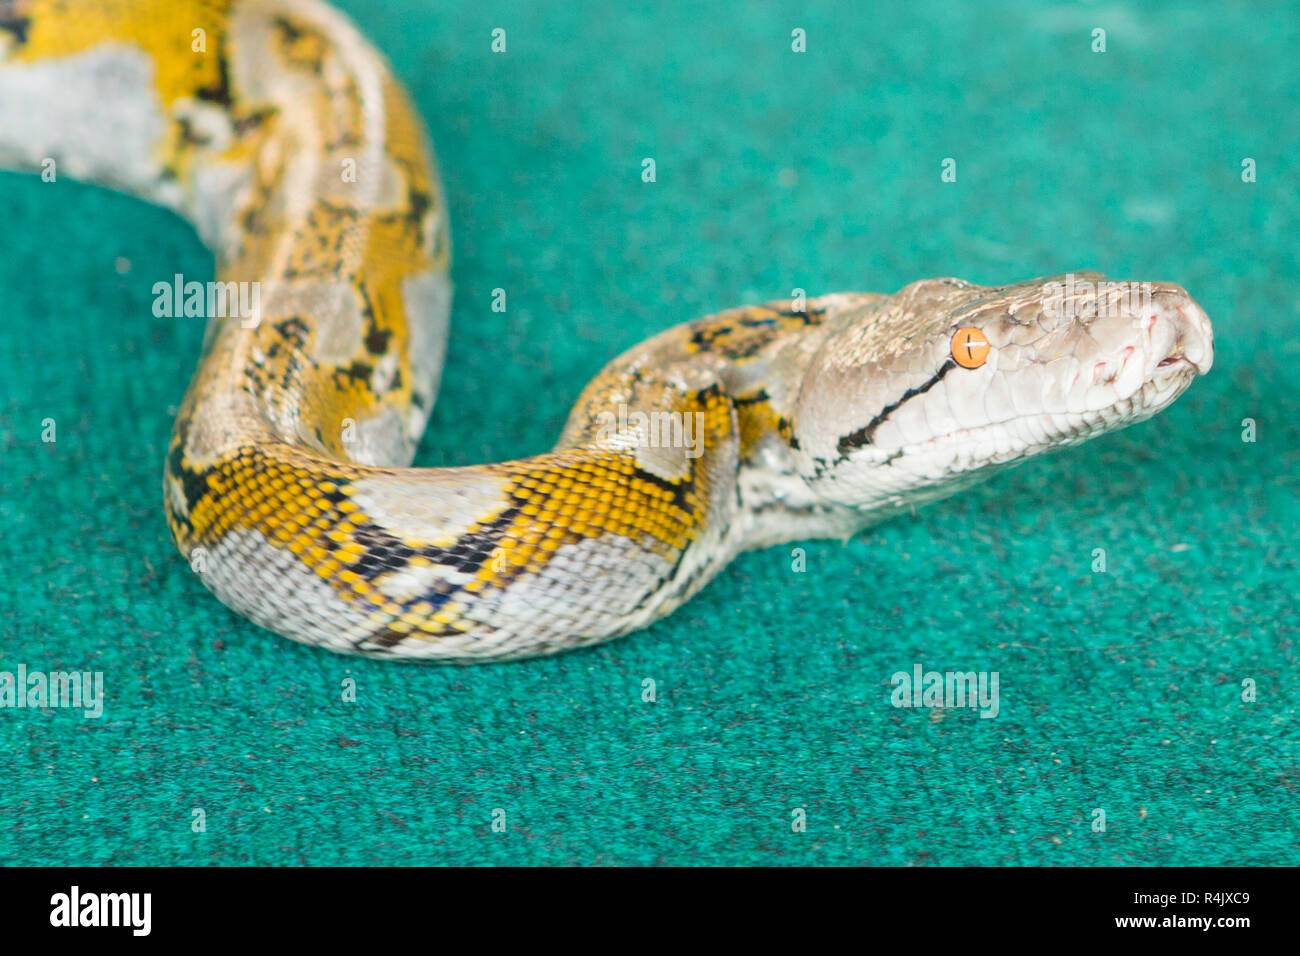 Schlangen zeigen thailand -Fotos und -Bildmaterial in hoher Auflösung ...